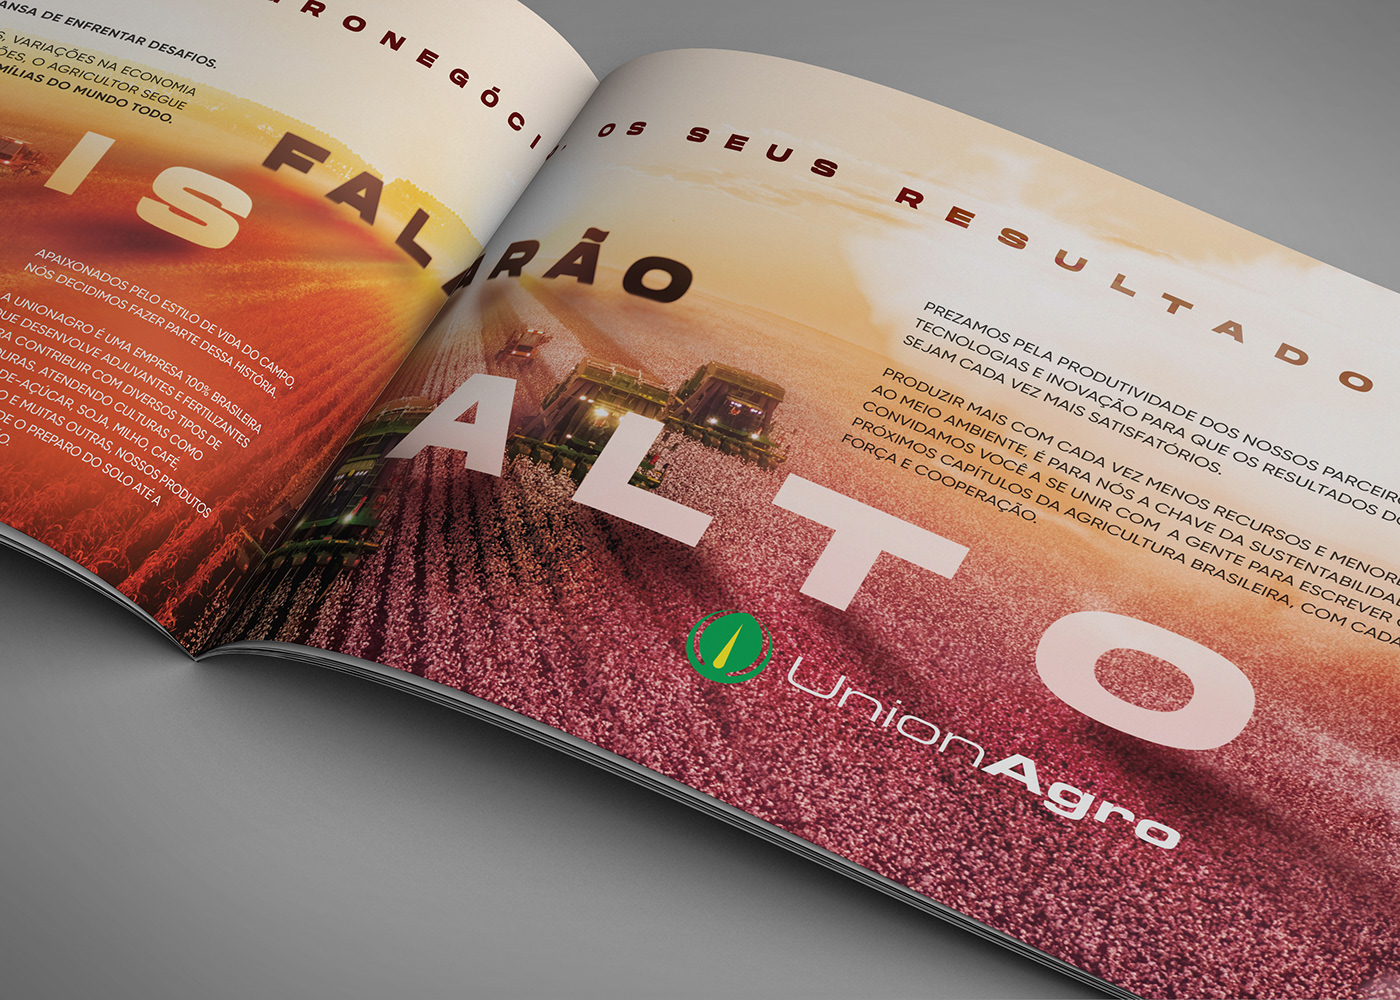 agricultura agriculture Agro Agronegócio brand identity campanha design gráfico Direção de arte identidade visual marca